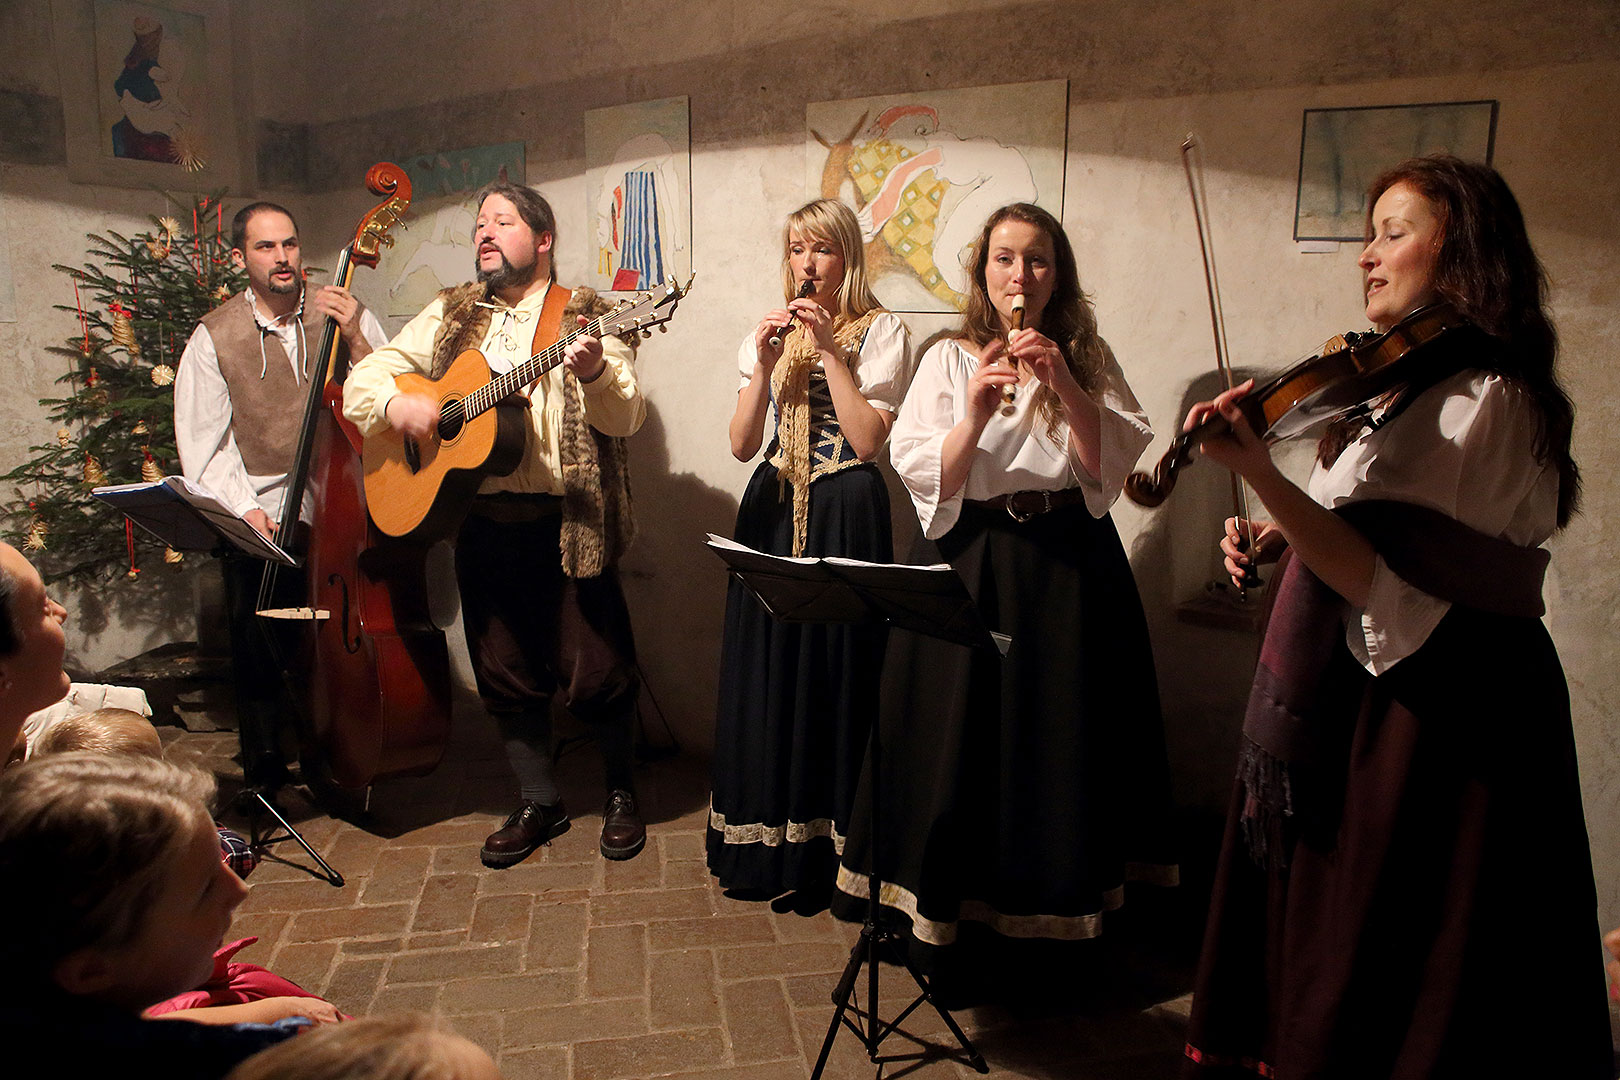 Kapka - Traditional Christmas concert of local folk band, 25.12.2013